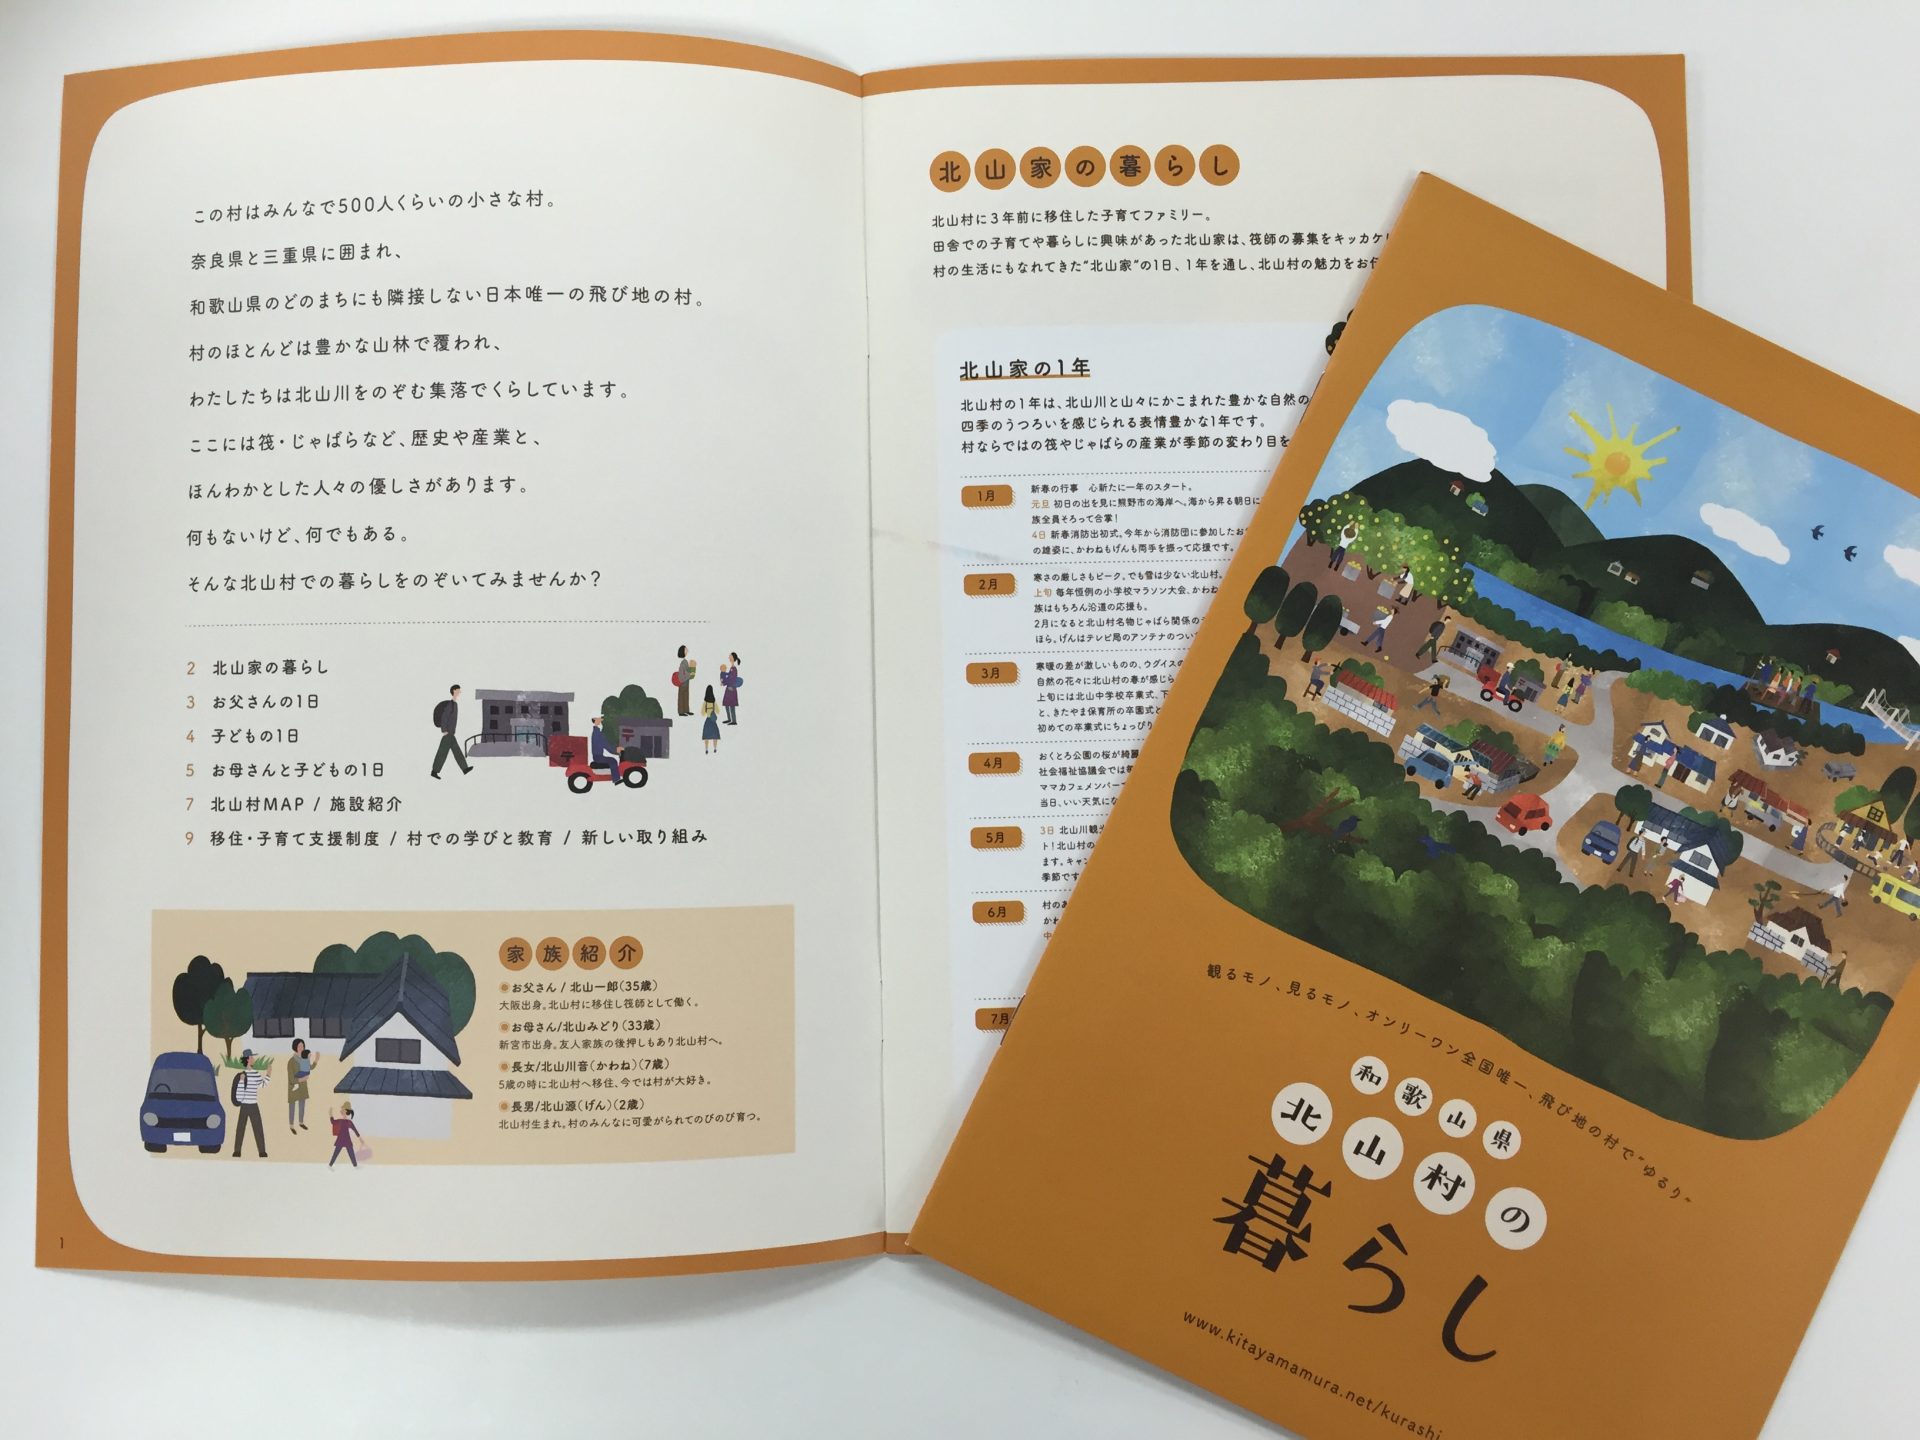 全国でココだけ!!飛び地の村、和歌山県北山村から移住ガイドが届きました。 | 地域のトピックス